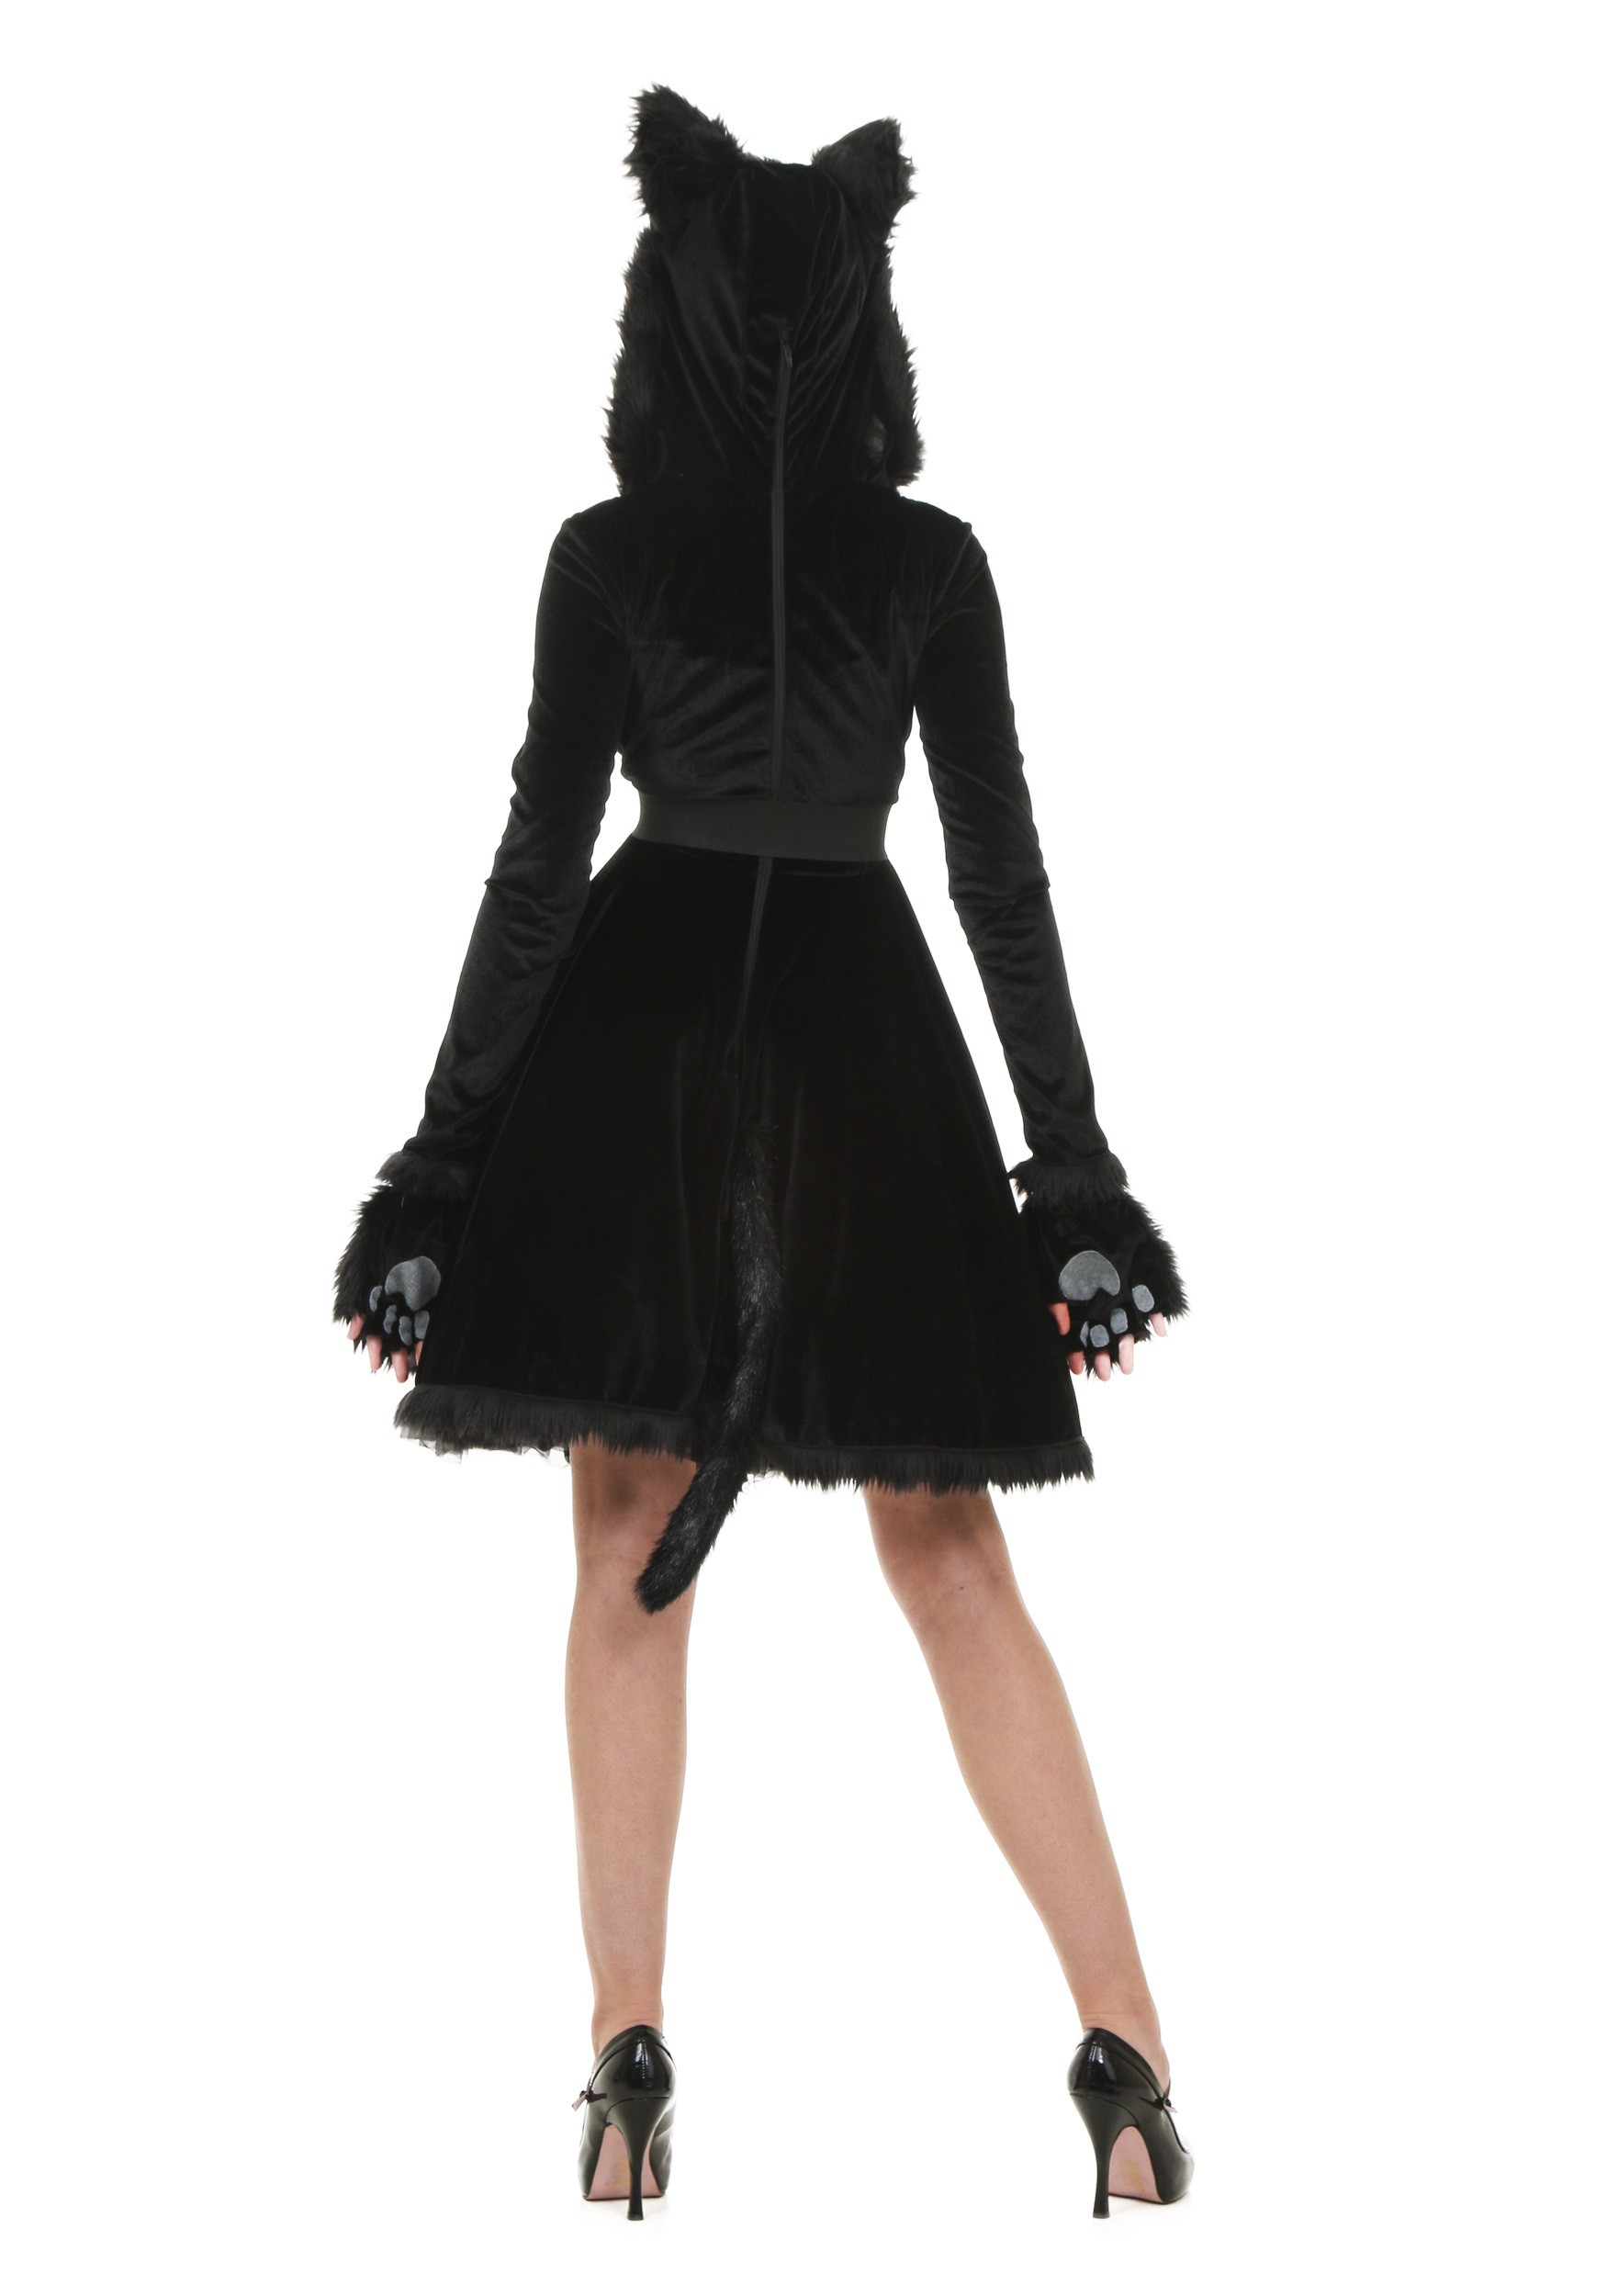 Black Cat Women's Fancy Dress Costume